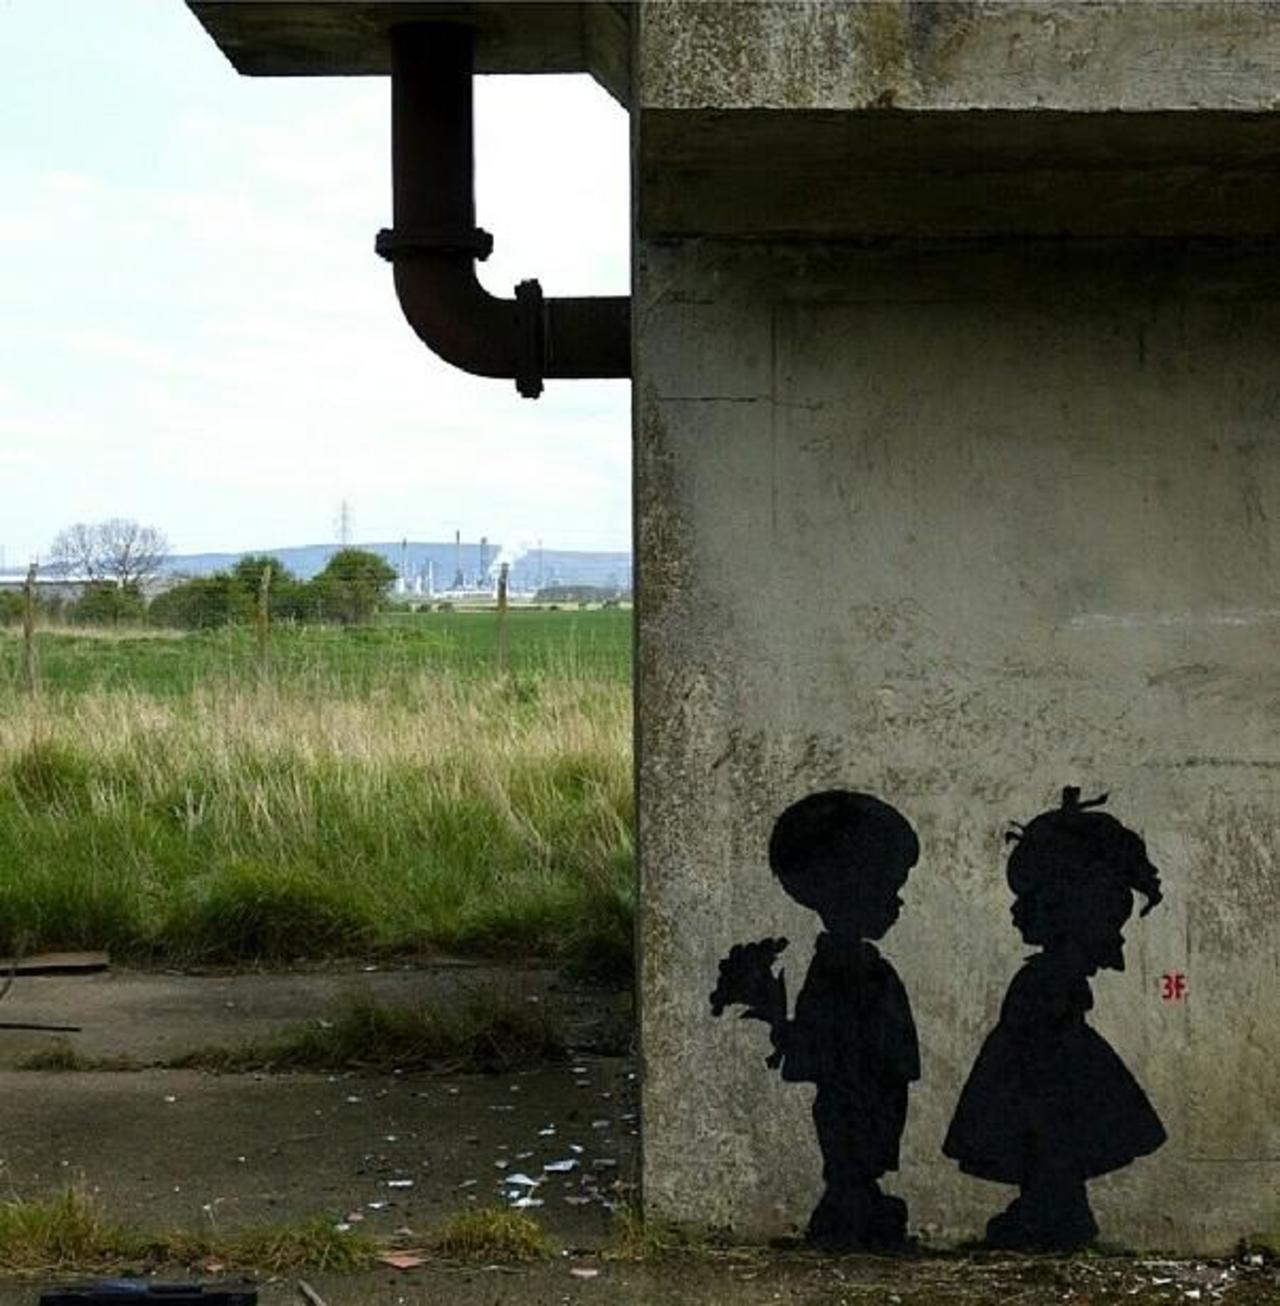 “@GoogleStreetArt: Found love in a hopeless place!

Street Art by 3fountains 

#art #mural #graffiti #streetart http://t.co/5NjwJokZFu” ❤️